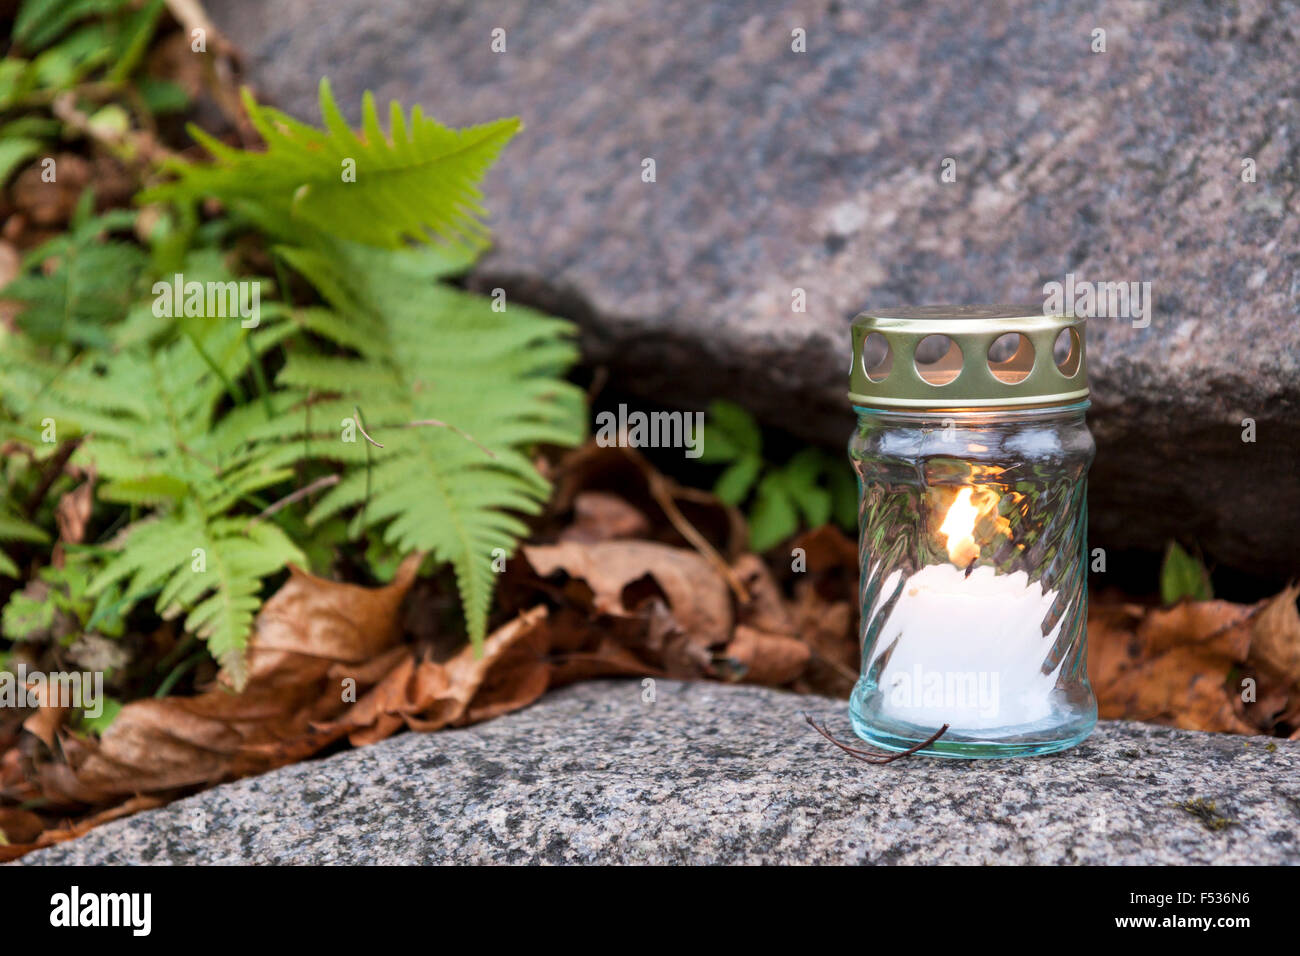 Lonely candela votiva sulla lapide e la masterizzazione. pietra tomba, piante verdi e impianti vecchi lascia visto in background poco profonda Foto Stock